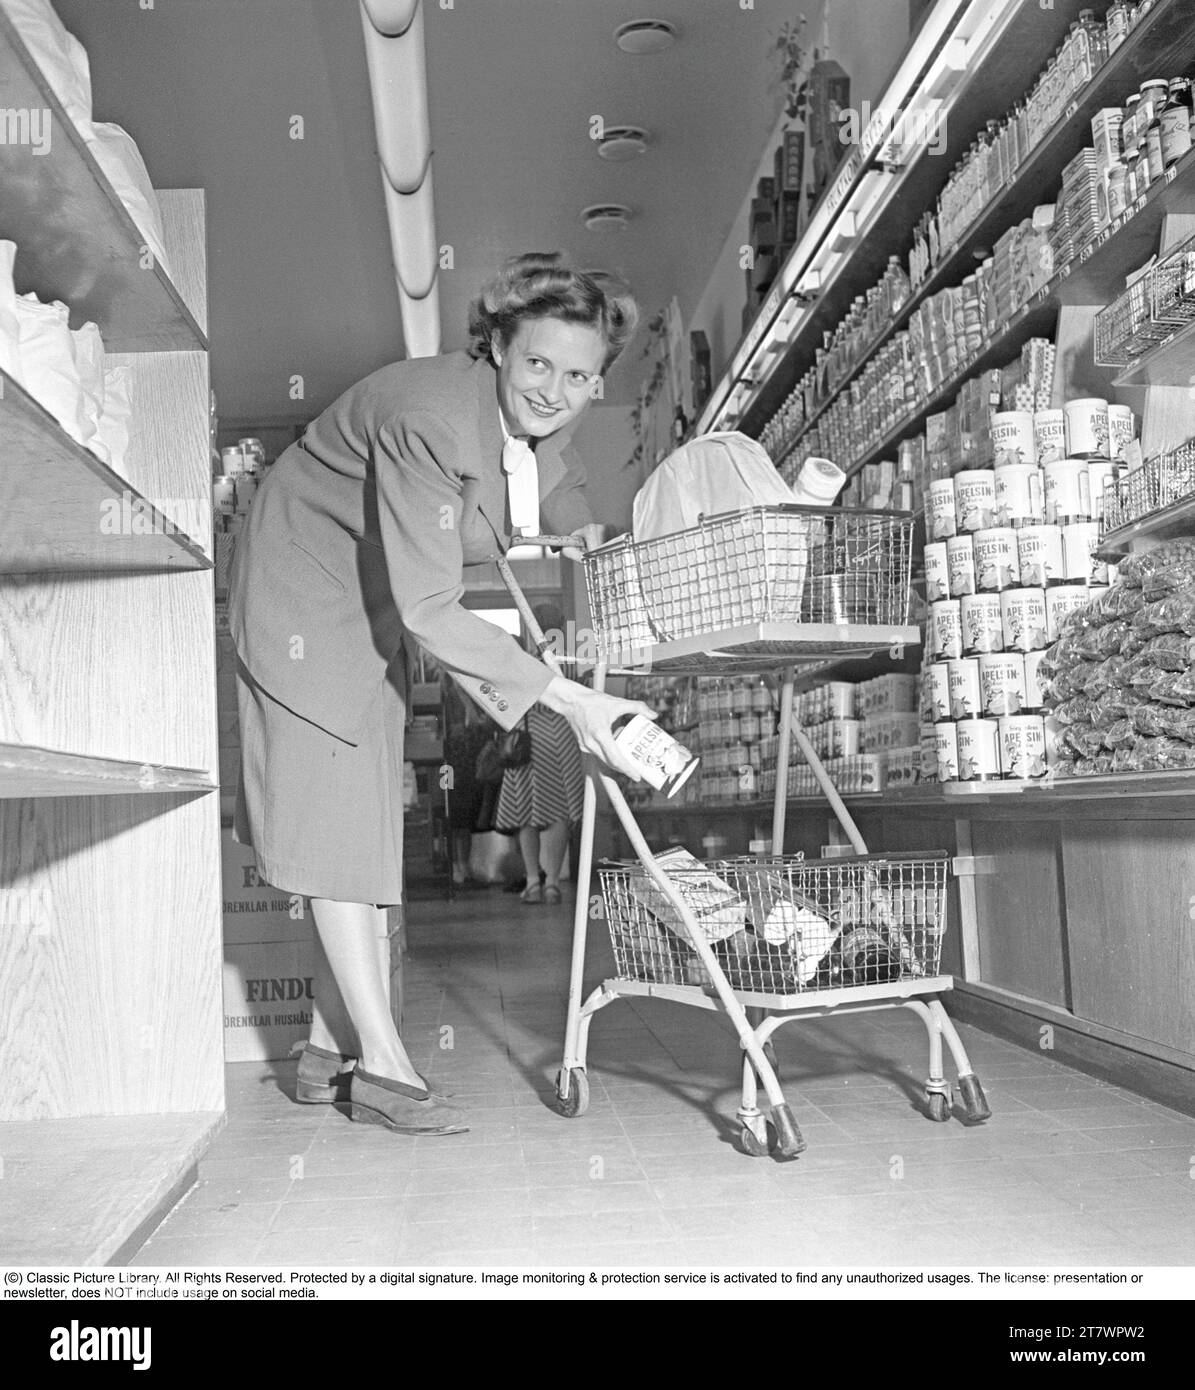 Shopping in den 1940er Jahren Eine Frau kauft in einem Selbstbedienungsladen ein. Sowohl die Idee des Self-Service als auch der Einkaufswagen kamen aus Amerika und zielten darauf ab, den Umsatz zu steigern. Der Kunde konnte sich die Lebensmittel aussuchen, in den Einkaufswagen legen und zur Kasse gehen. Zu dieser Zeit wurde diese Art des modernen Einkaufs in Schweden neu eingeführt. 1949. Kristoffersson Ref. AS47-1 Stockfoto